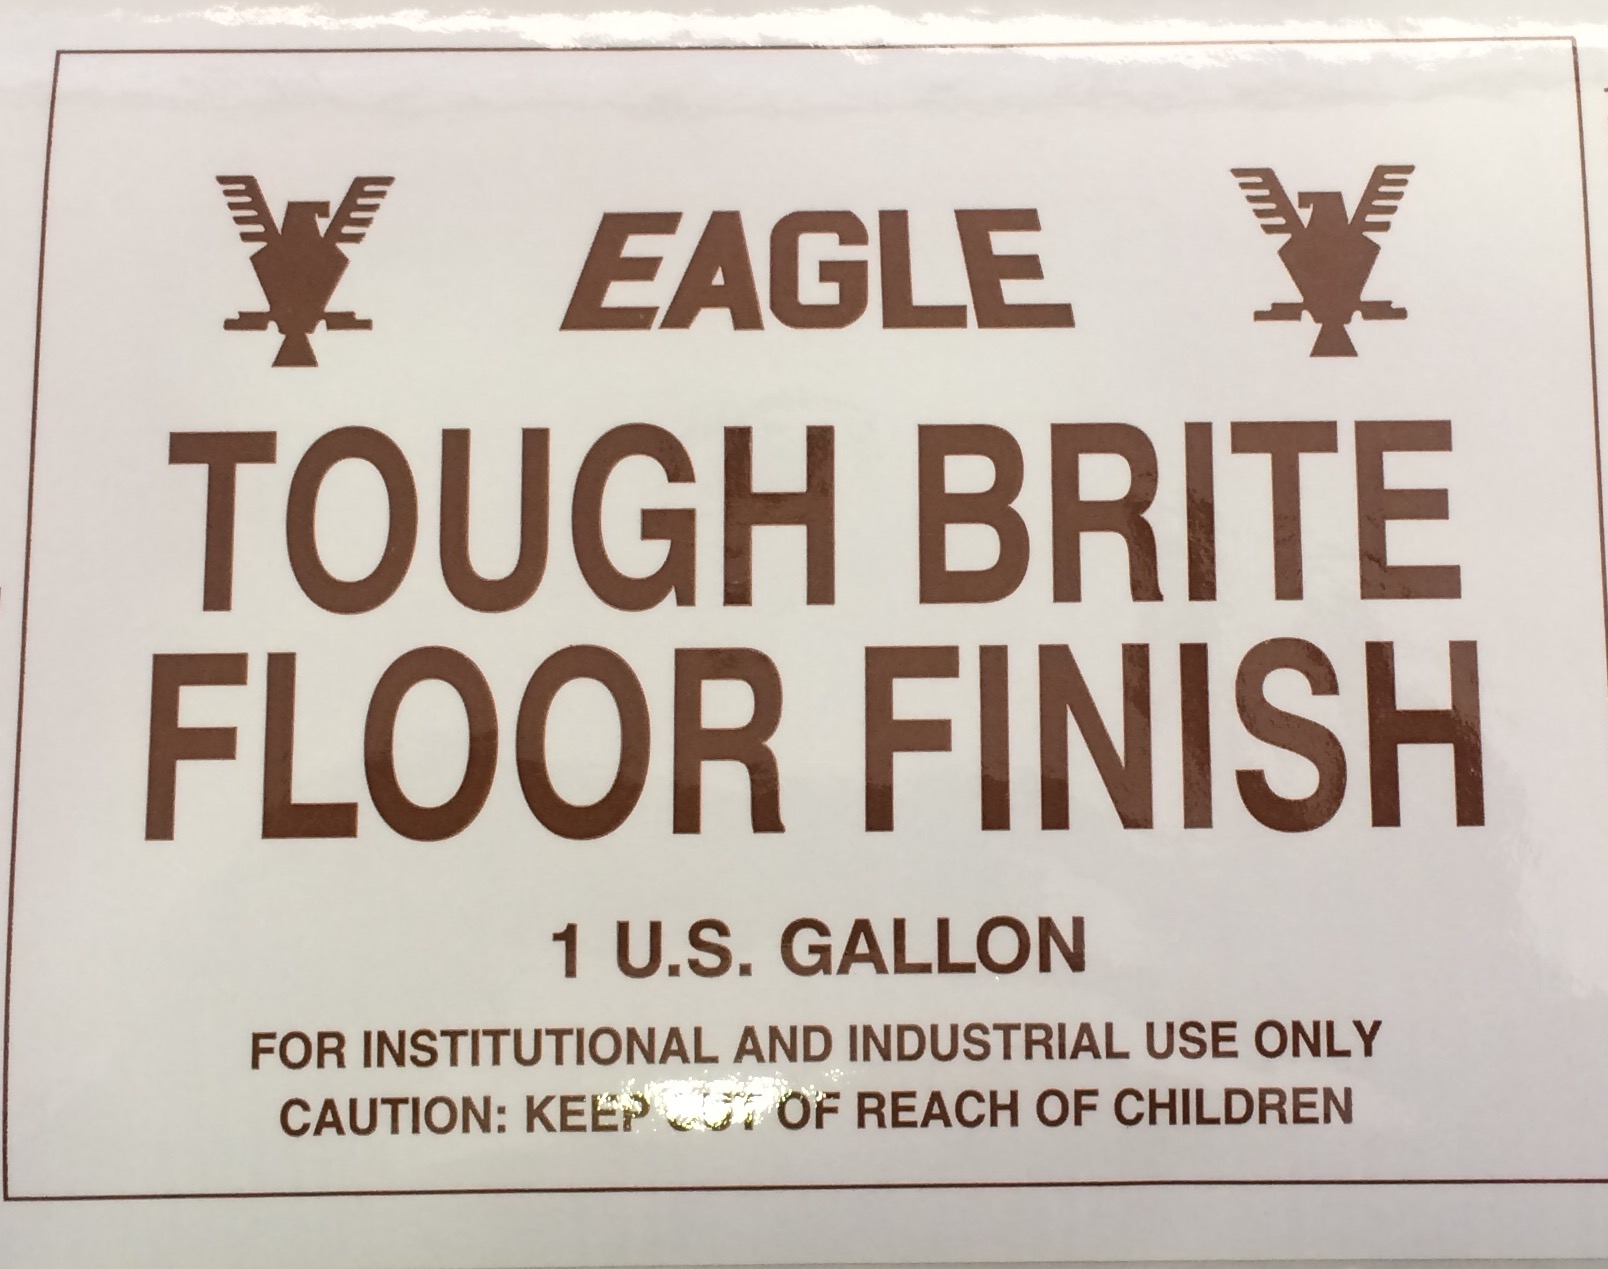 EAGLE TOUGH BRITE FLOOR FINISH
1GL/4CS